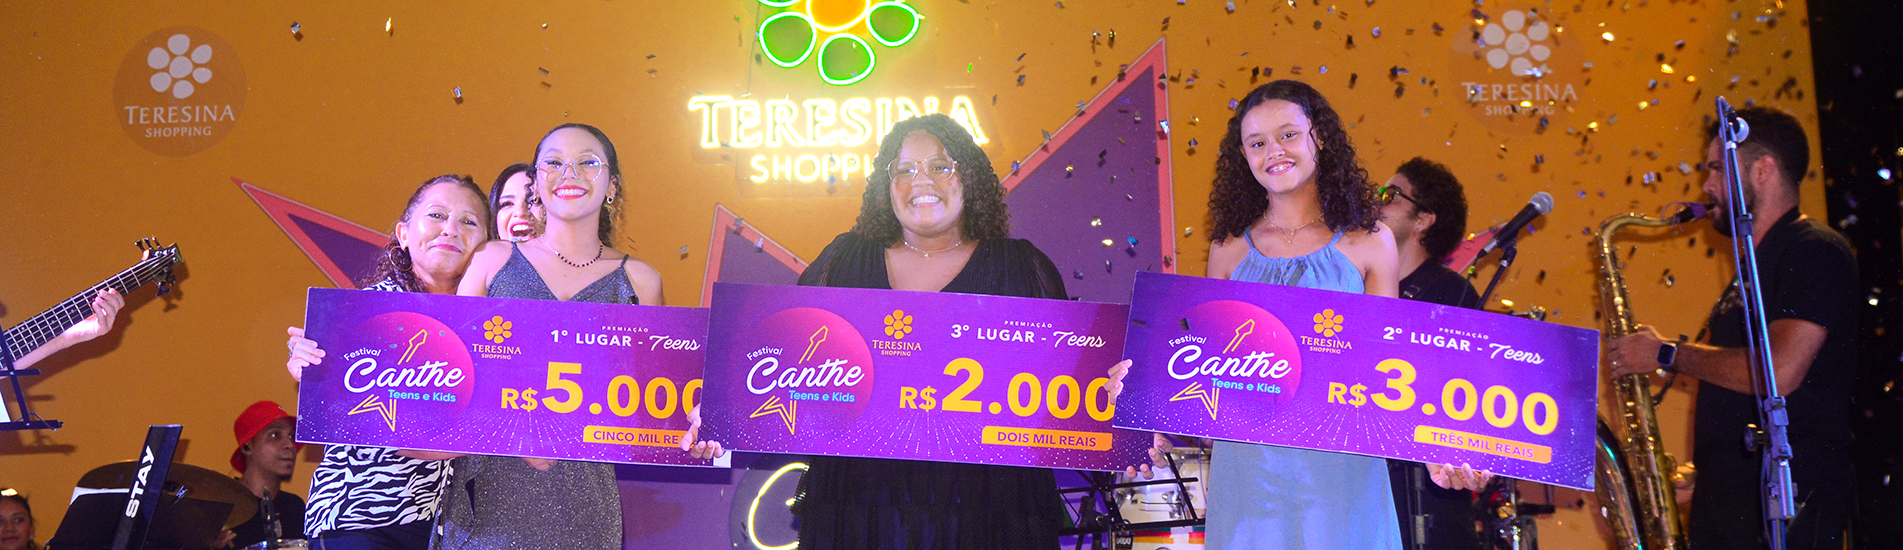 Yasmim Mourão é a grande vencedora do Festival Canthe no Teresina Shopping 